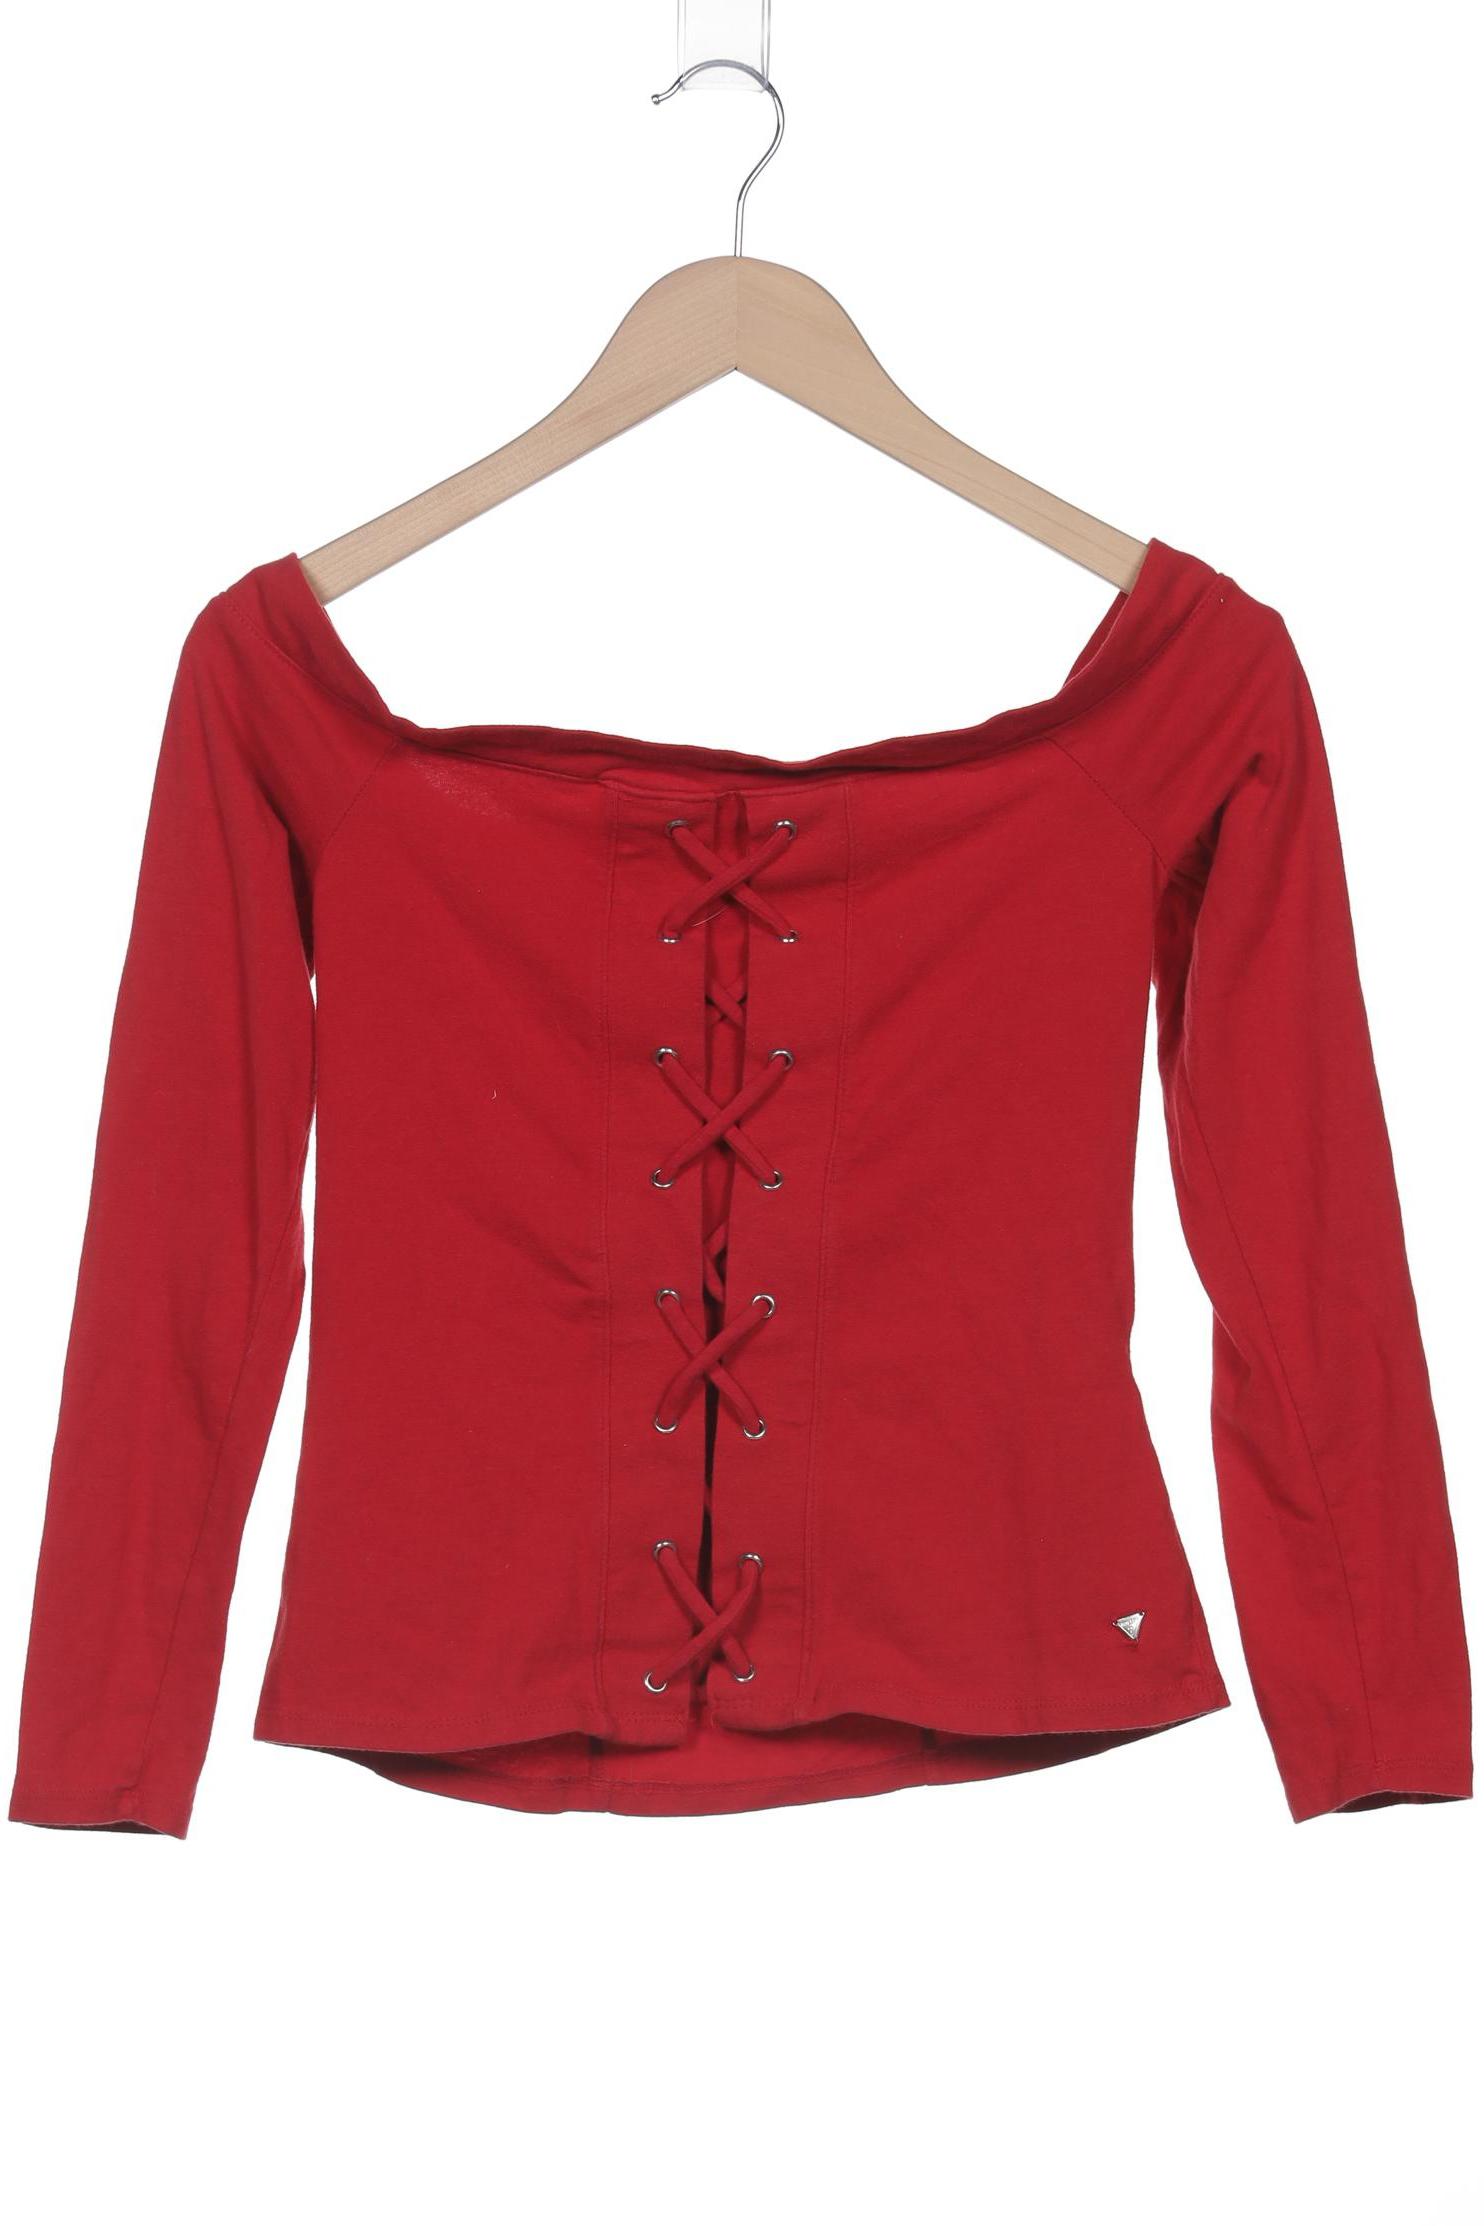 Guess Damen Langarmshirt, rot, Gr. 38 von Guess